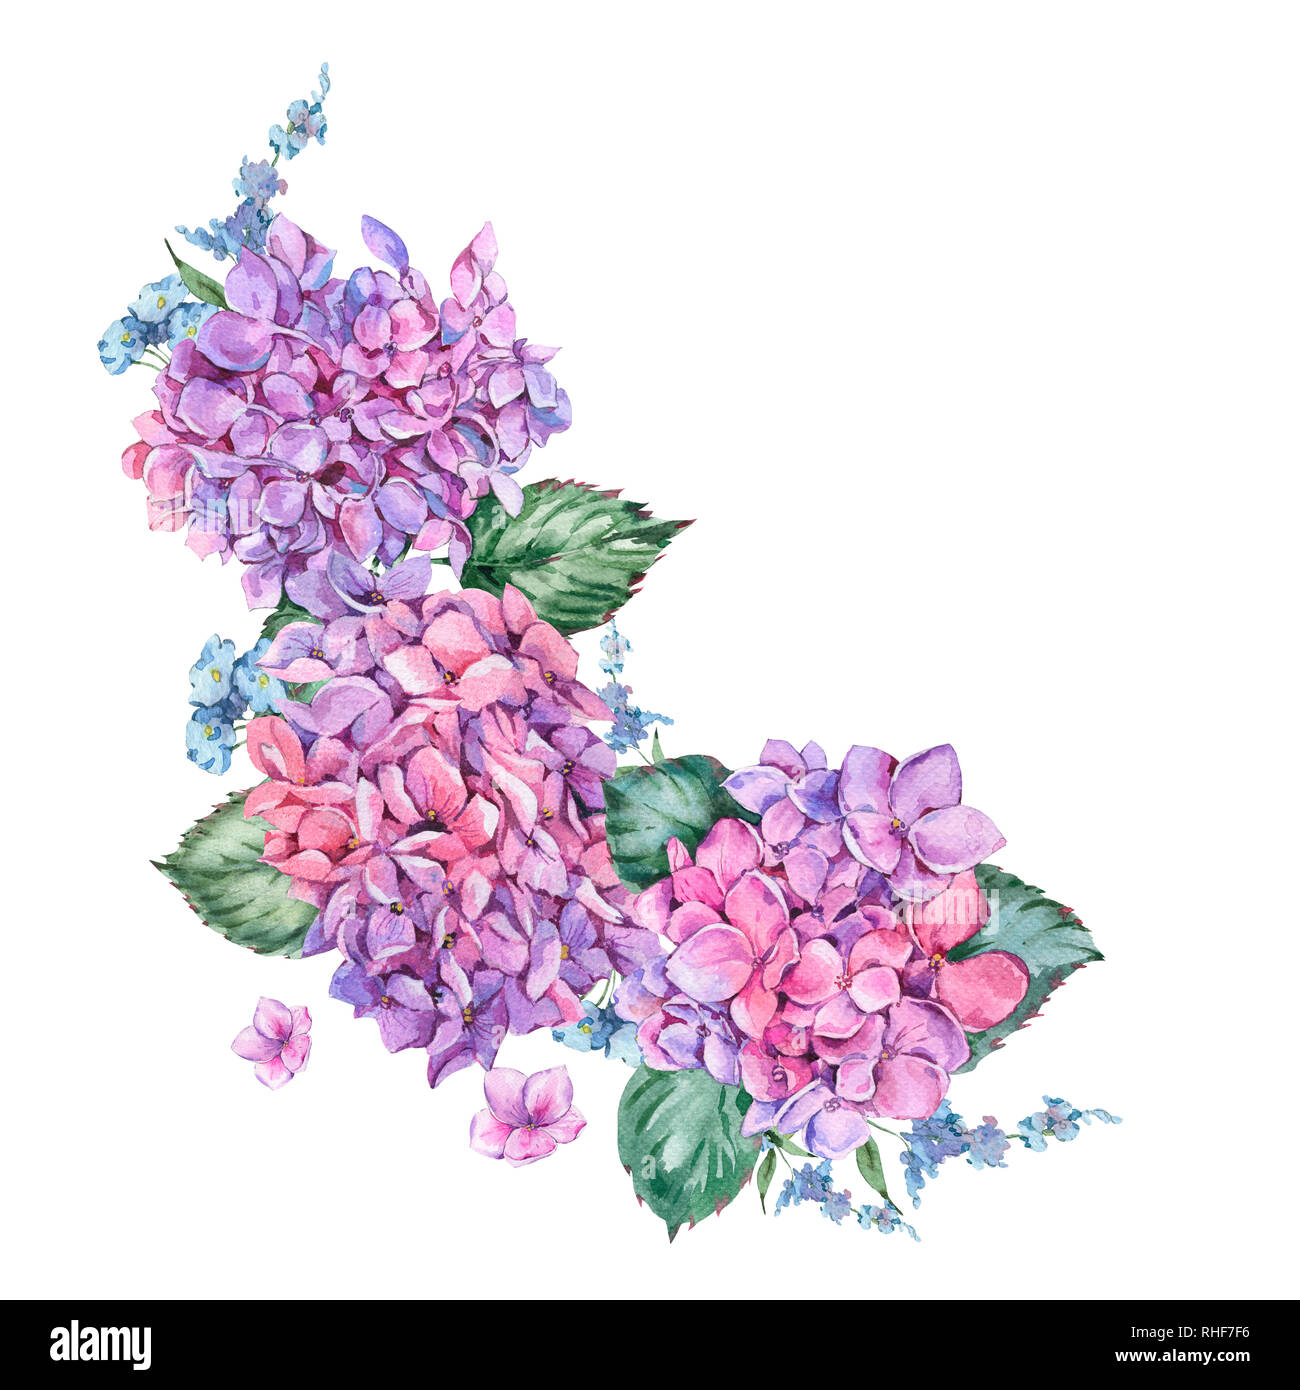 Aquarelle d'été Vintage couronne de fleurs de fleurs de l'hortensia, hydrangea naturel botanique Aquarelle illustration isolé sur fond blanc Banque D'Images